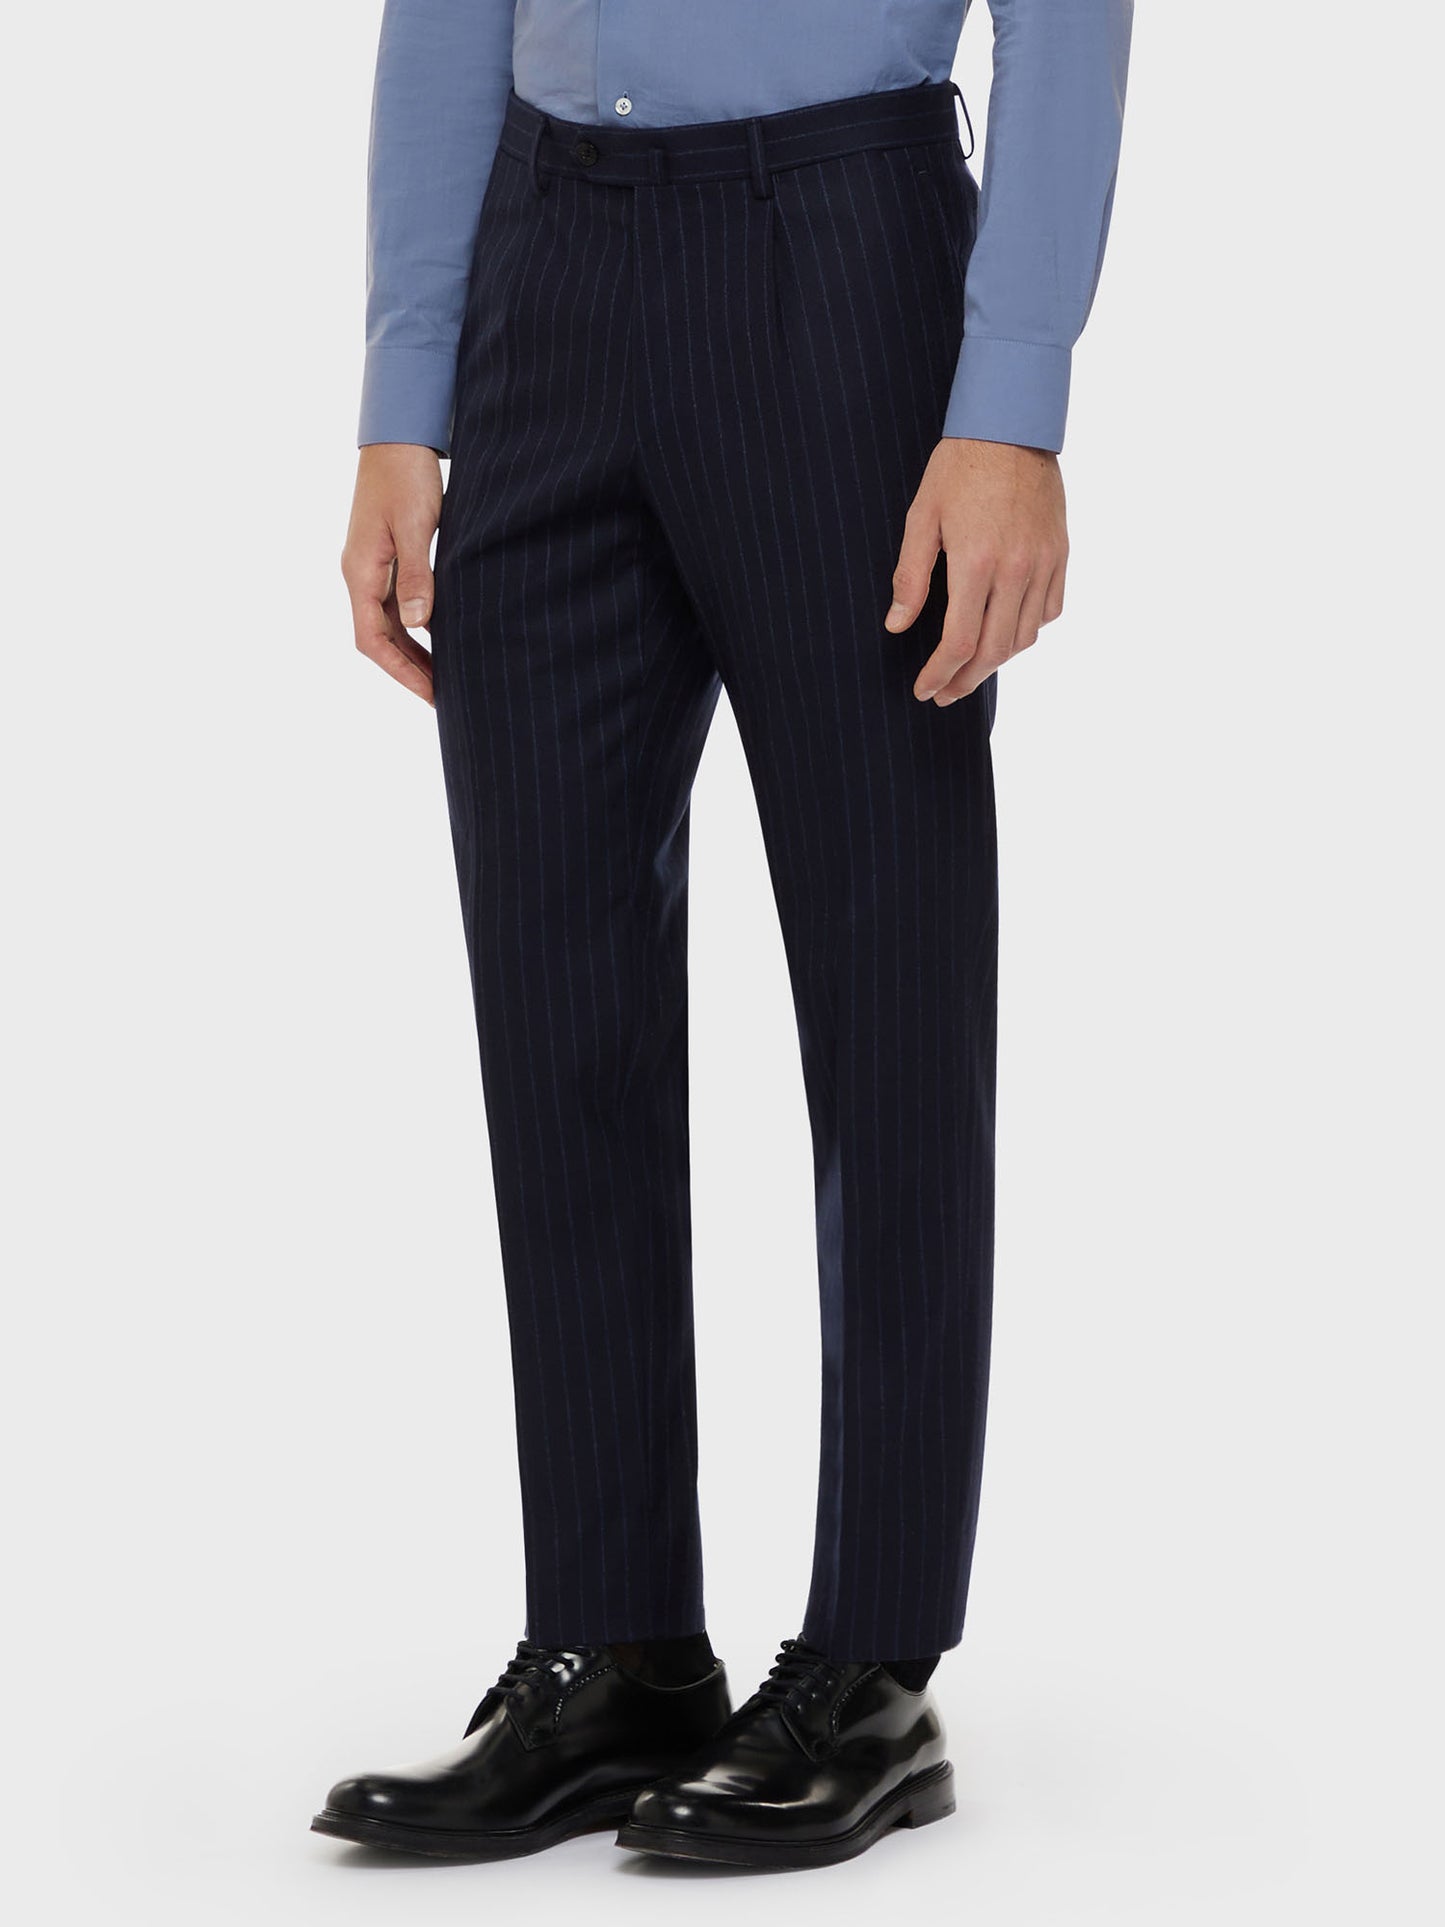 Caruso Menswear Abbigliamento Uomo Abito norma monopetto in lana "Nuage" blu drop 7R dettaglio pantalone